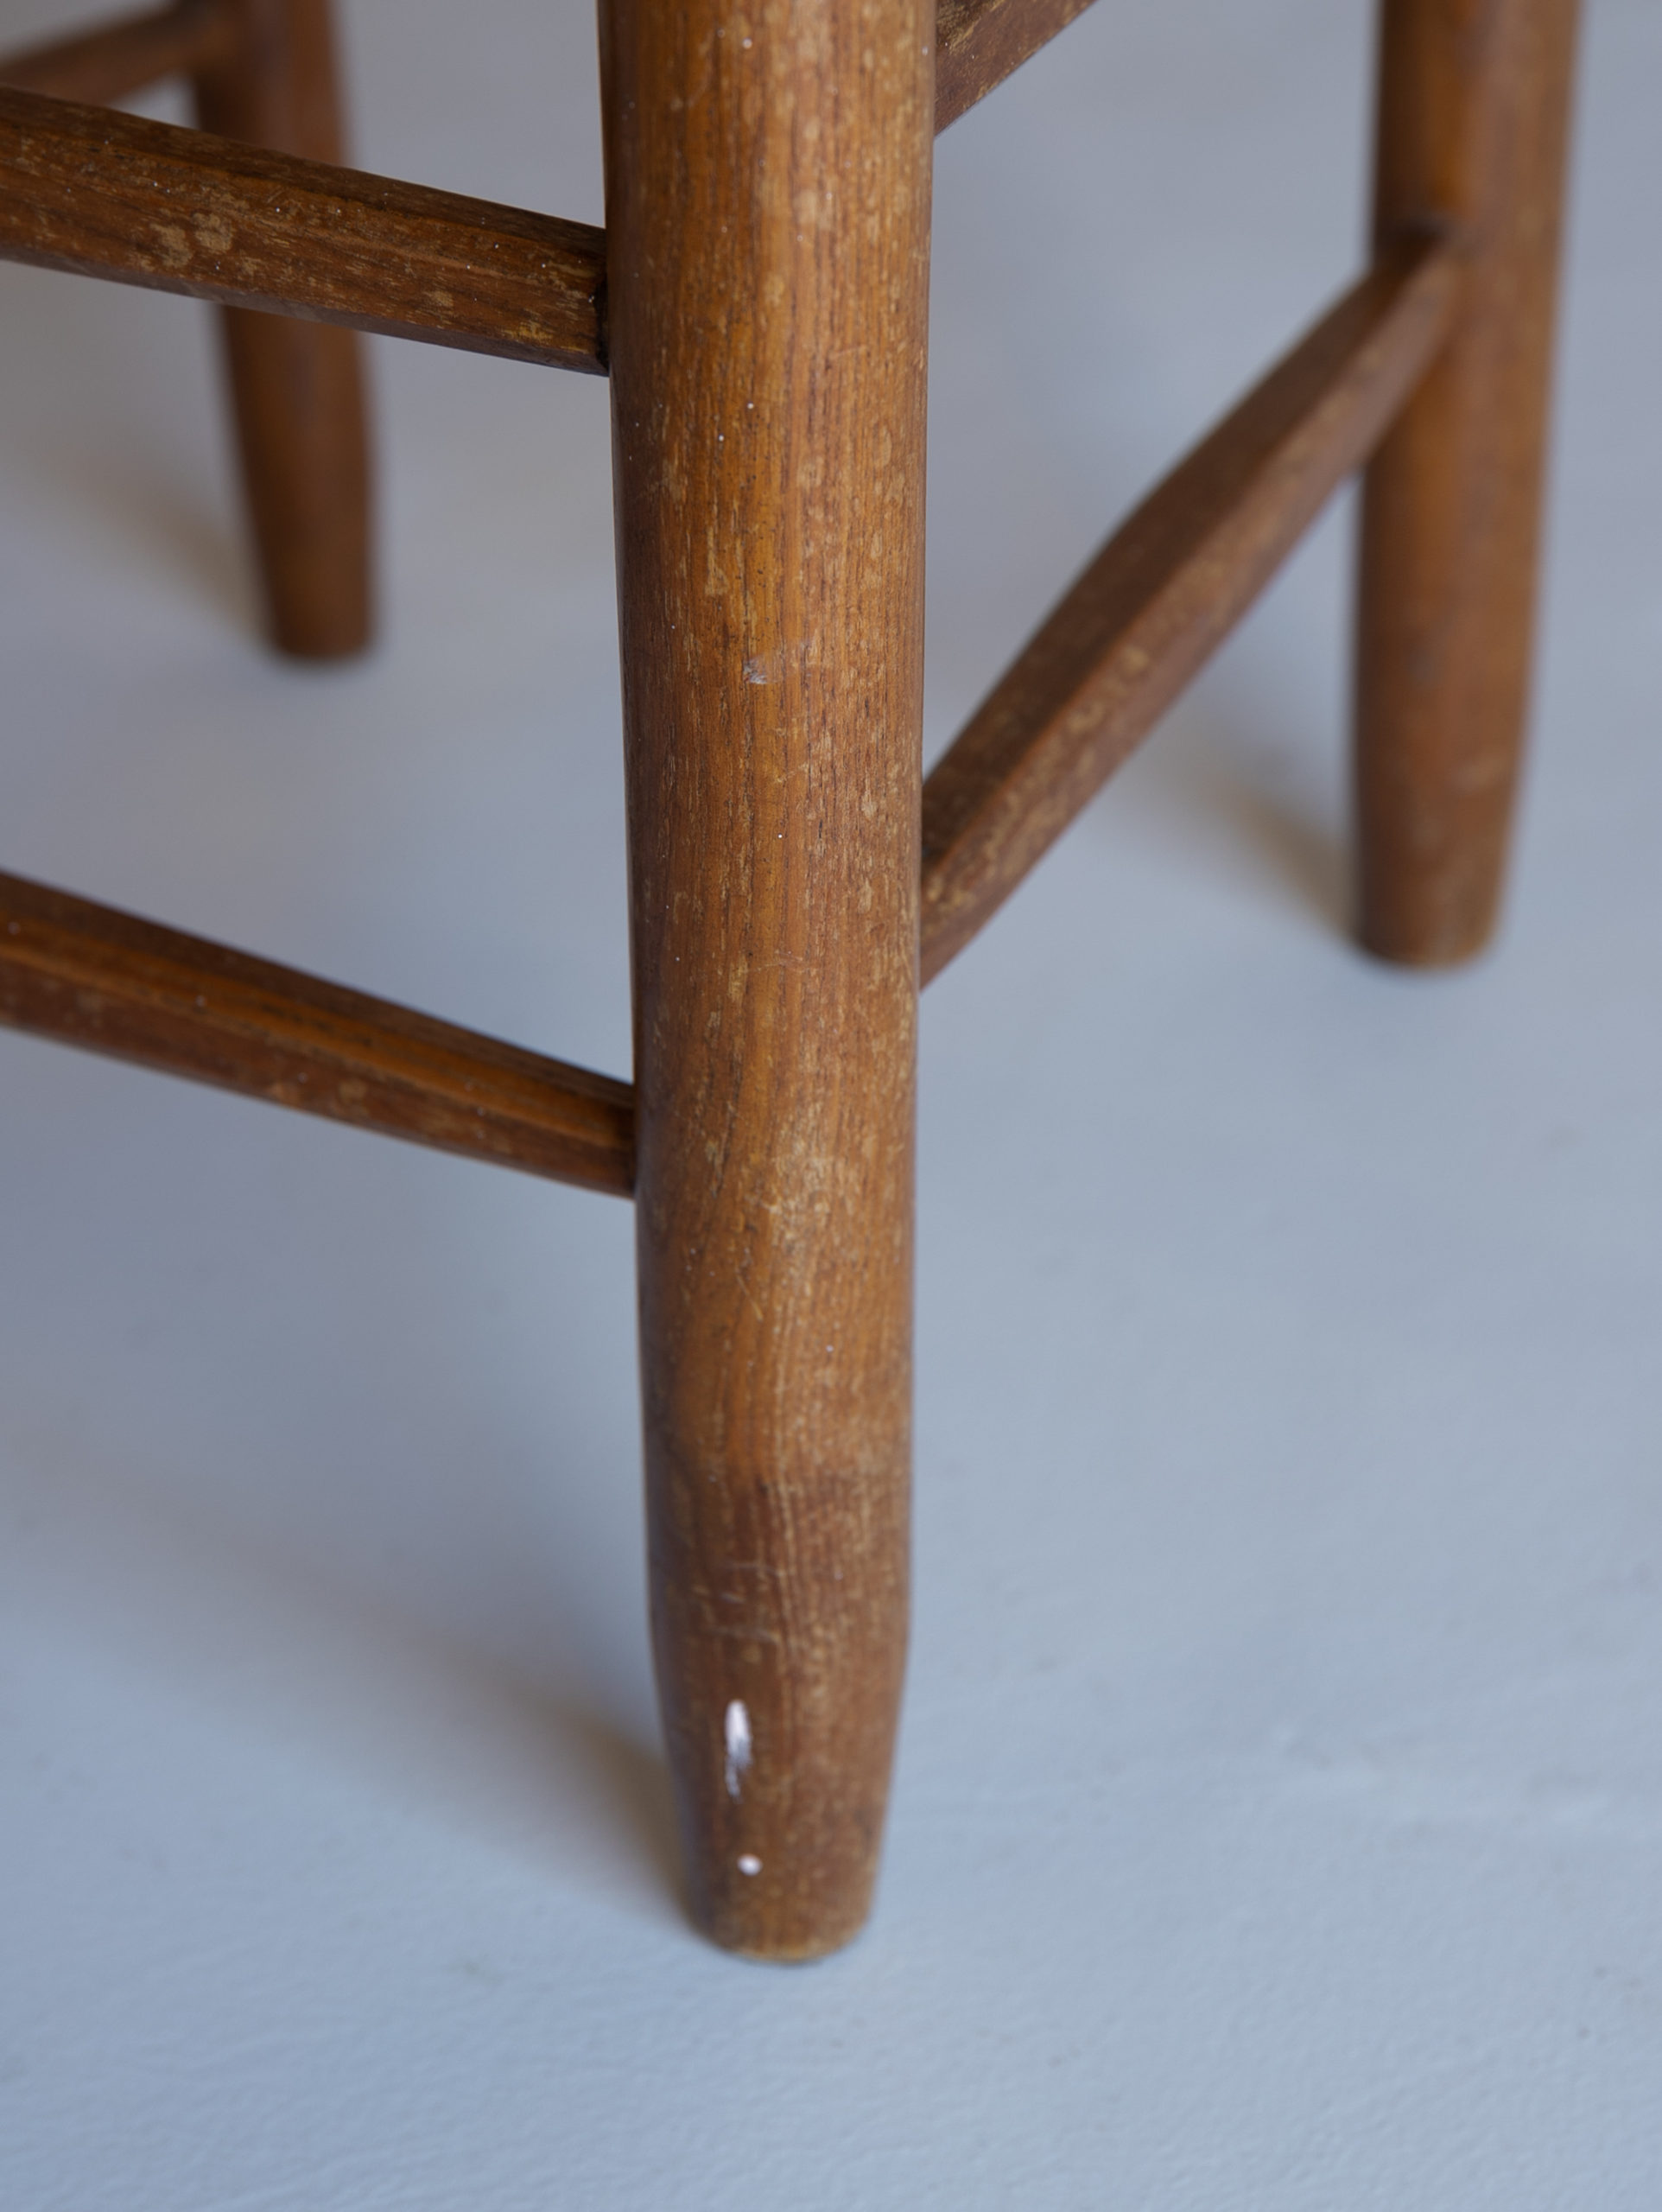 n°19 ‘Bauche’ Chair by Charlotte Perriand